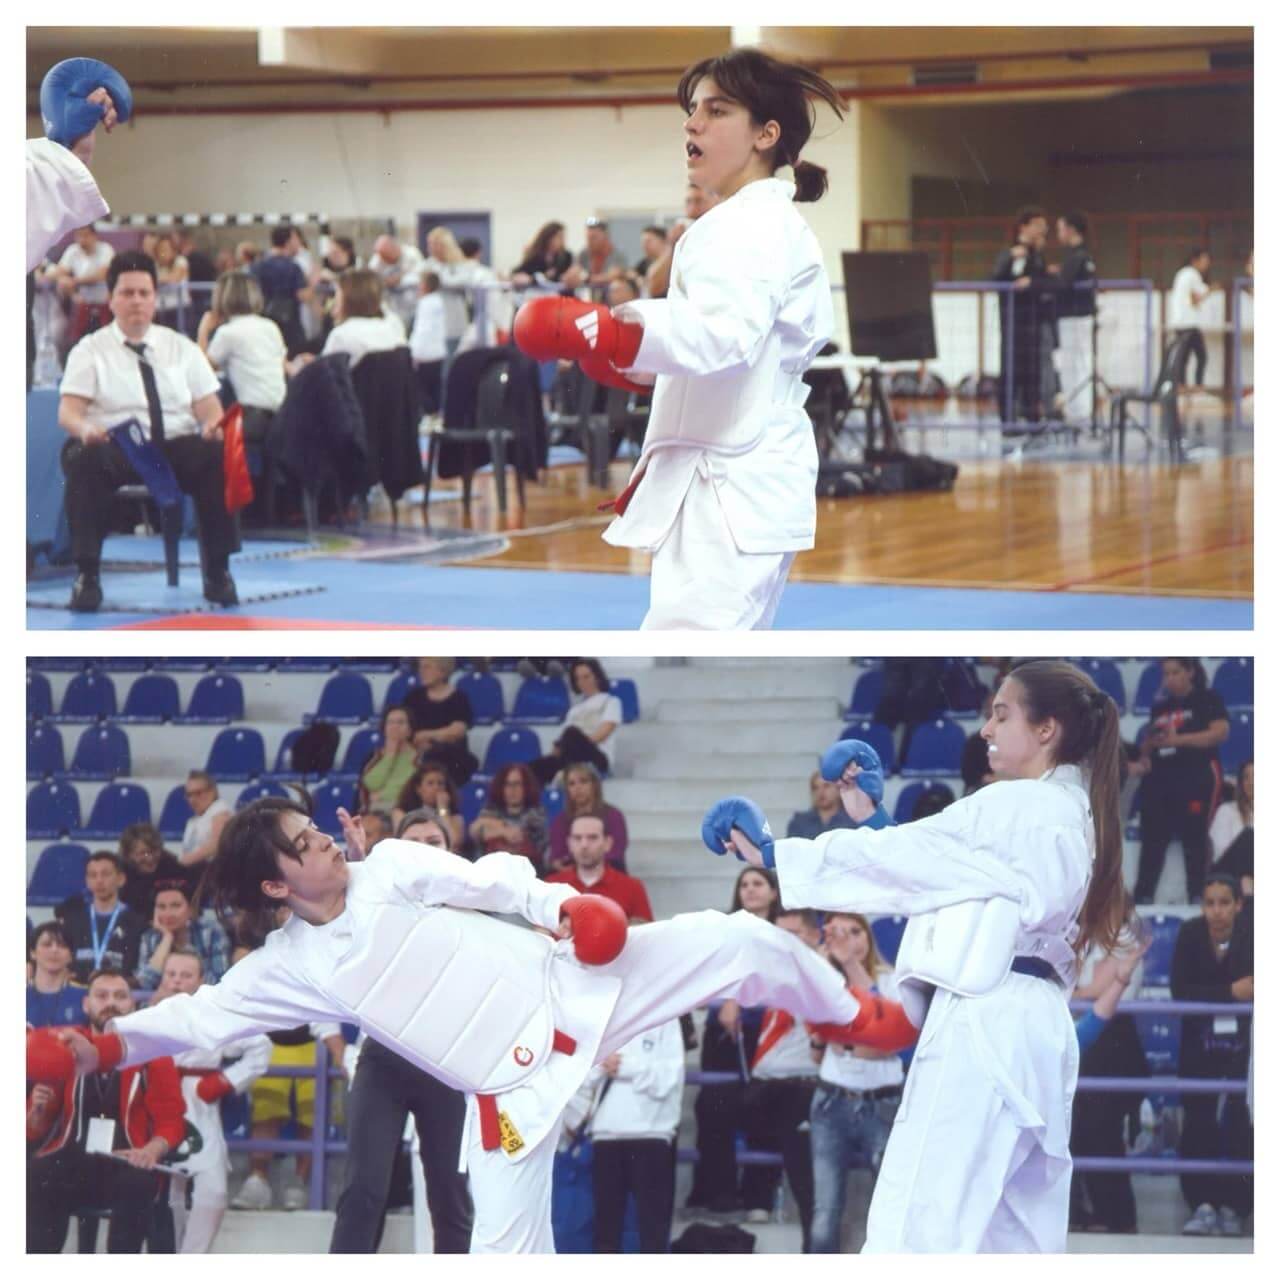 victorious-karate-psachna-panellinio-protathlima-paidon-korasidon-2024-5